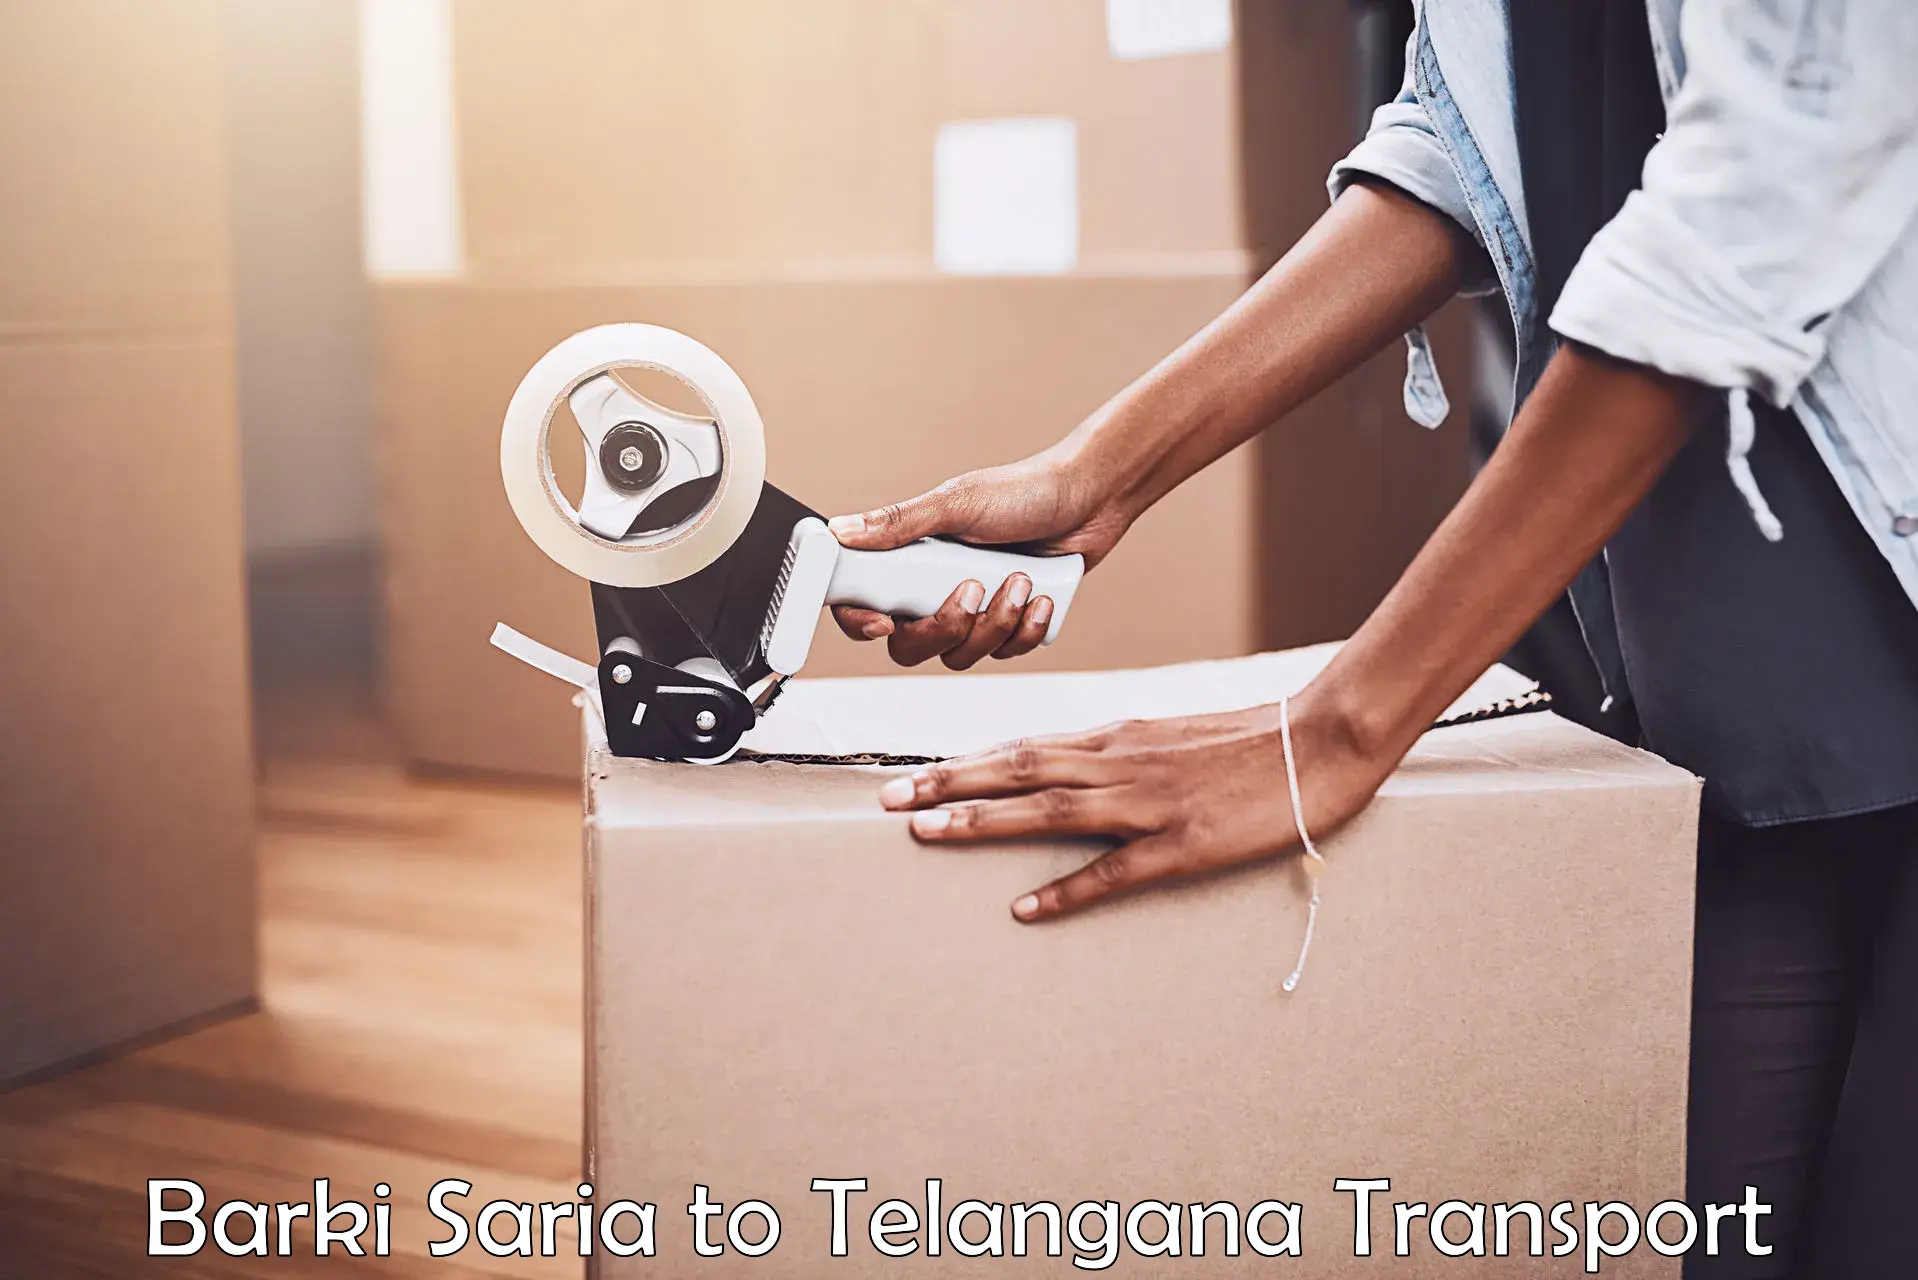 Air freight transport services Barki Saria to Telangana